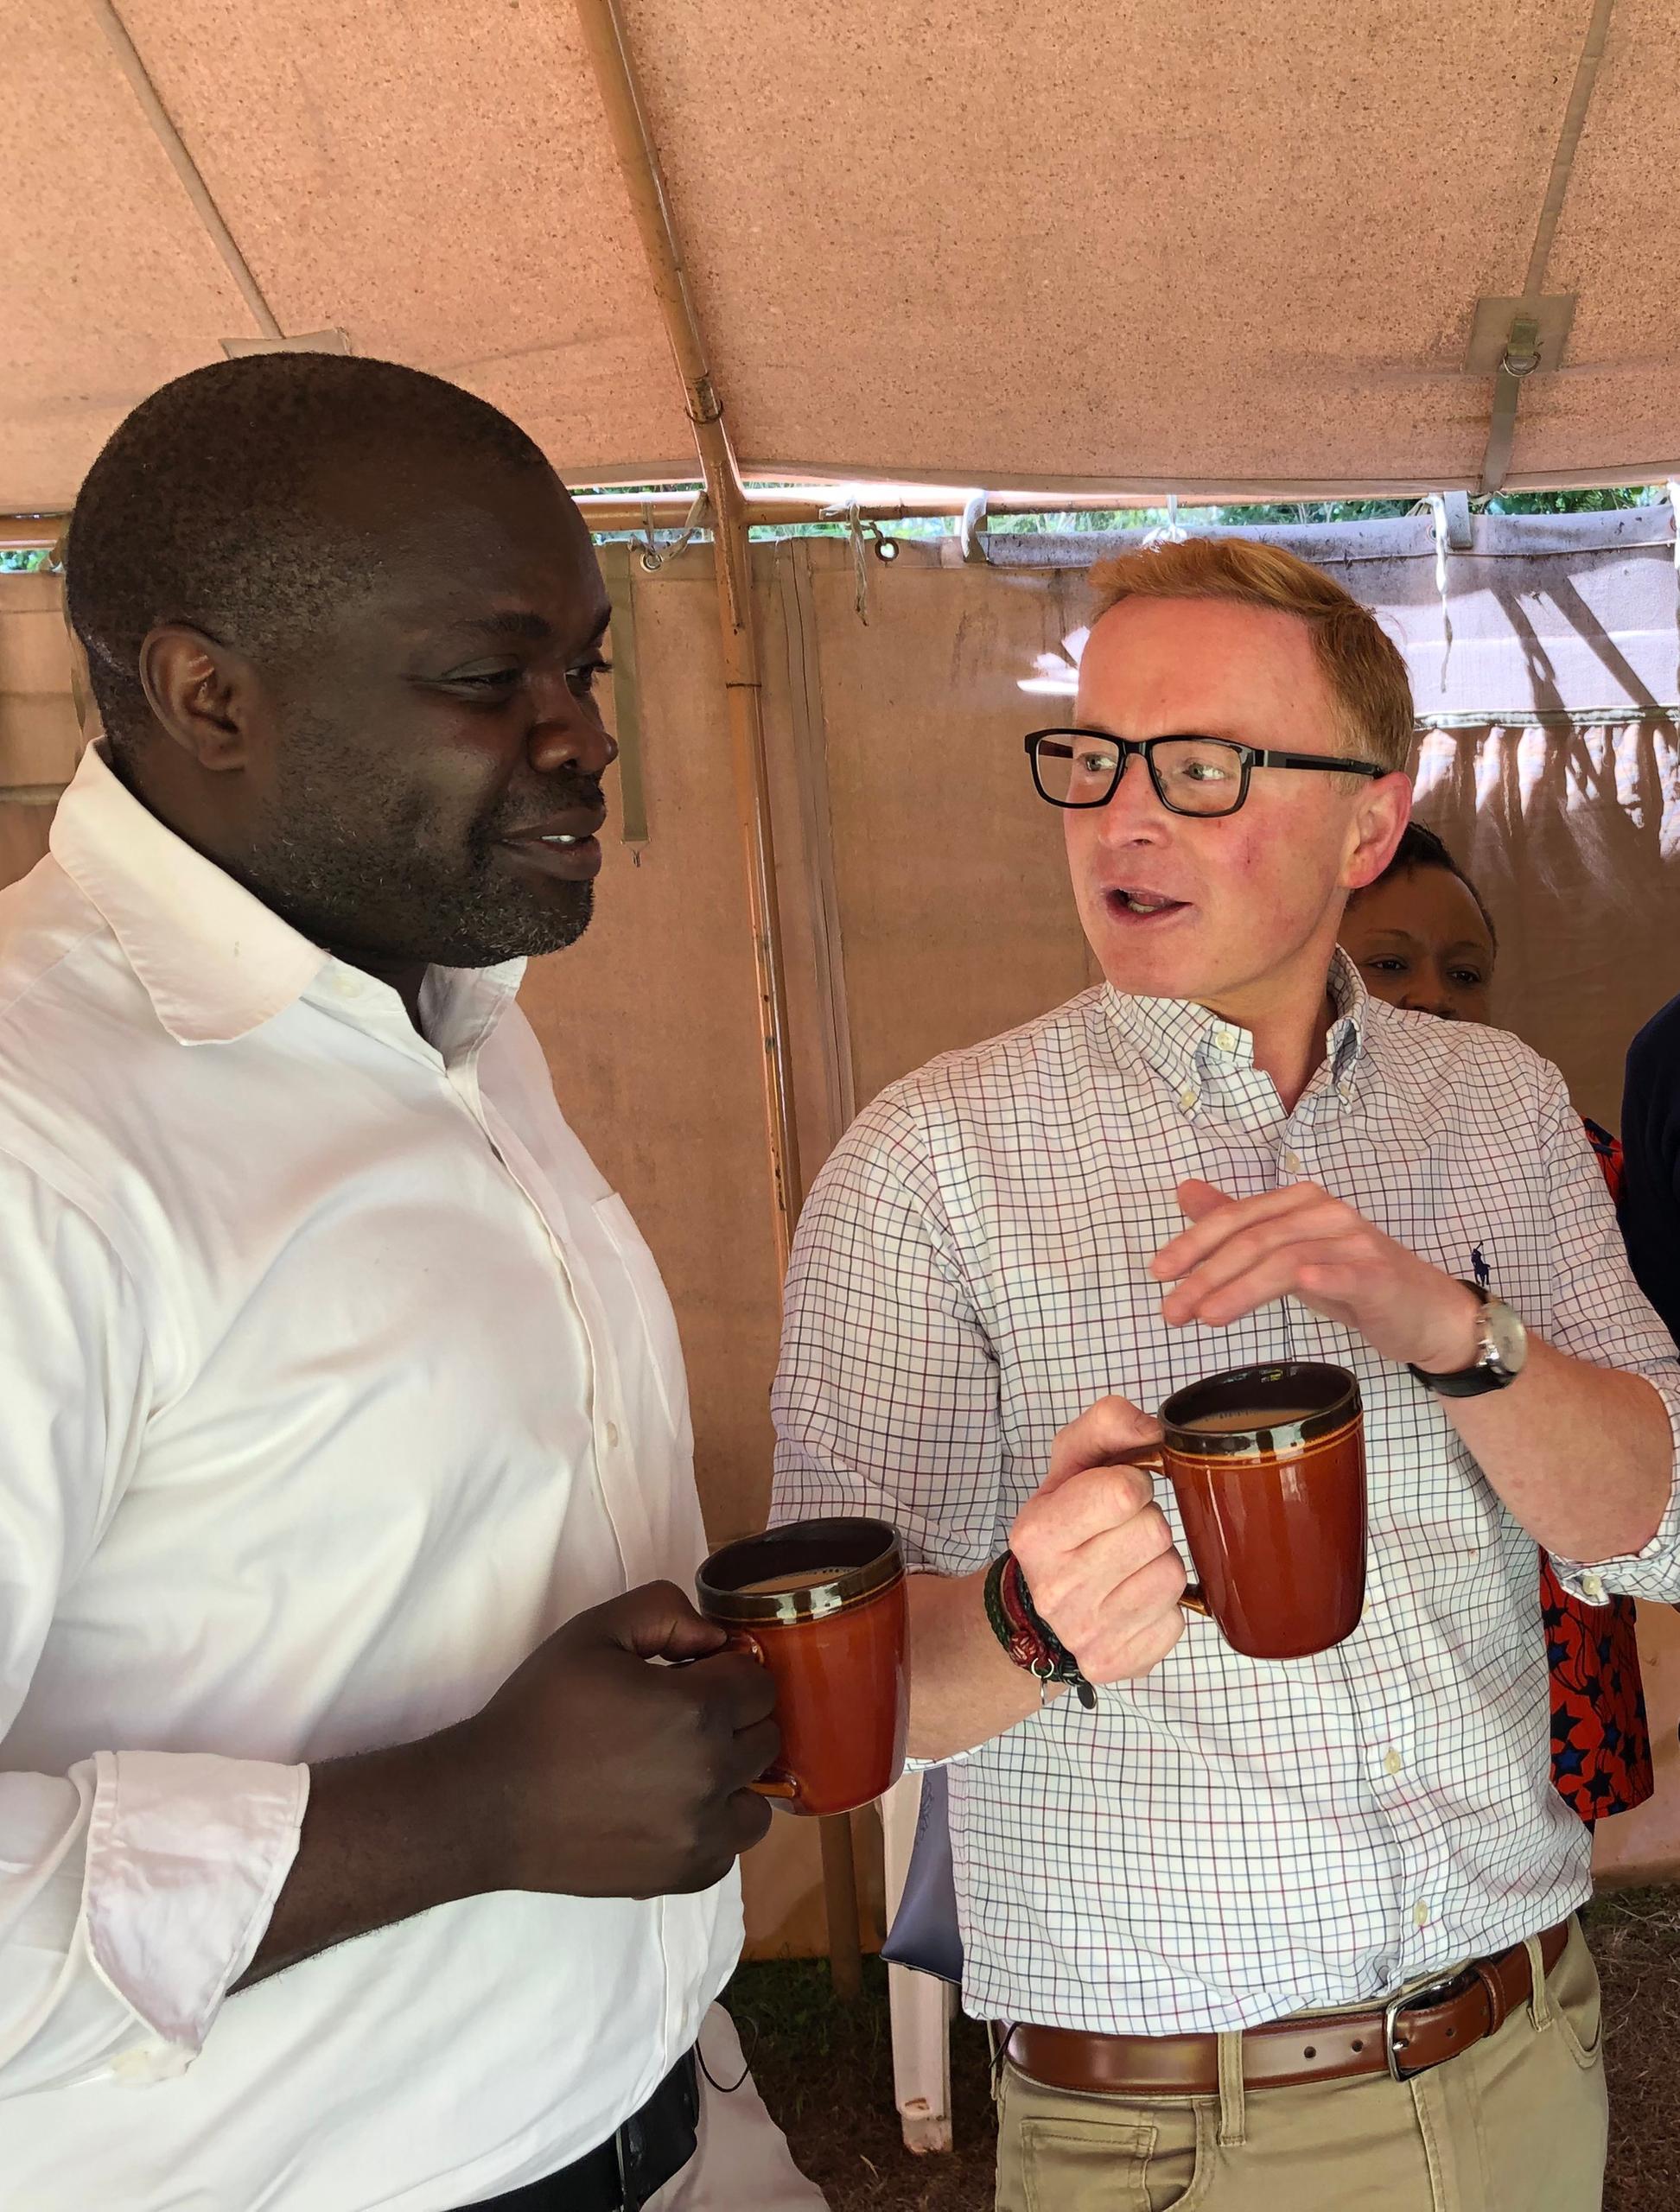 罗氏全球市场准入负责人迈克尔·奥伯雷特在访问肯尼亚期间与国际癌症研究所所长/首席执行官奇特·阿西尔瓦教授的合影。